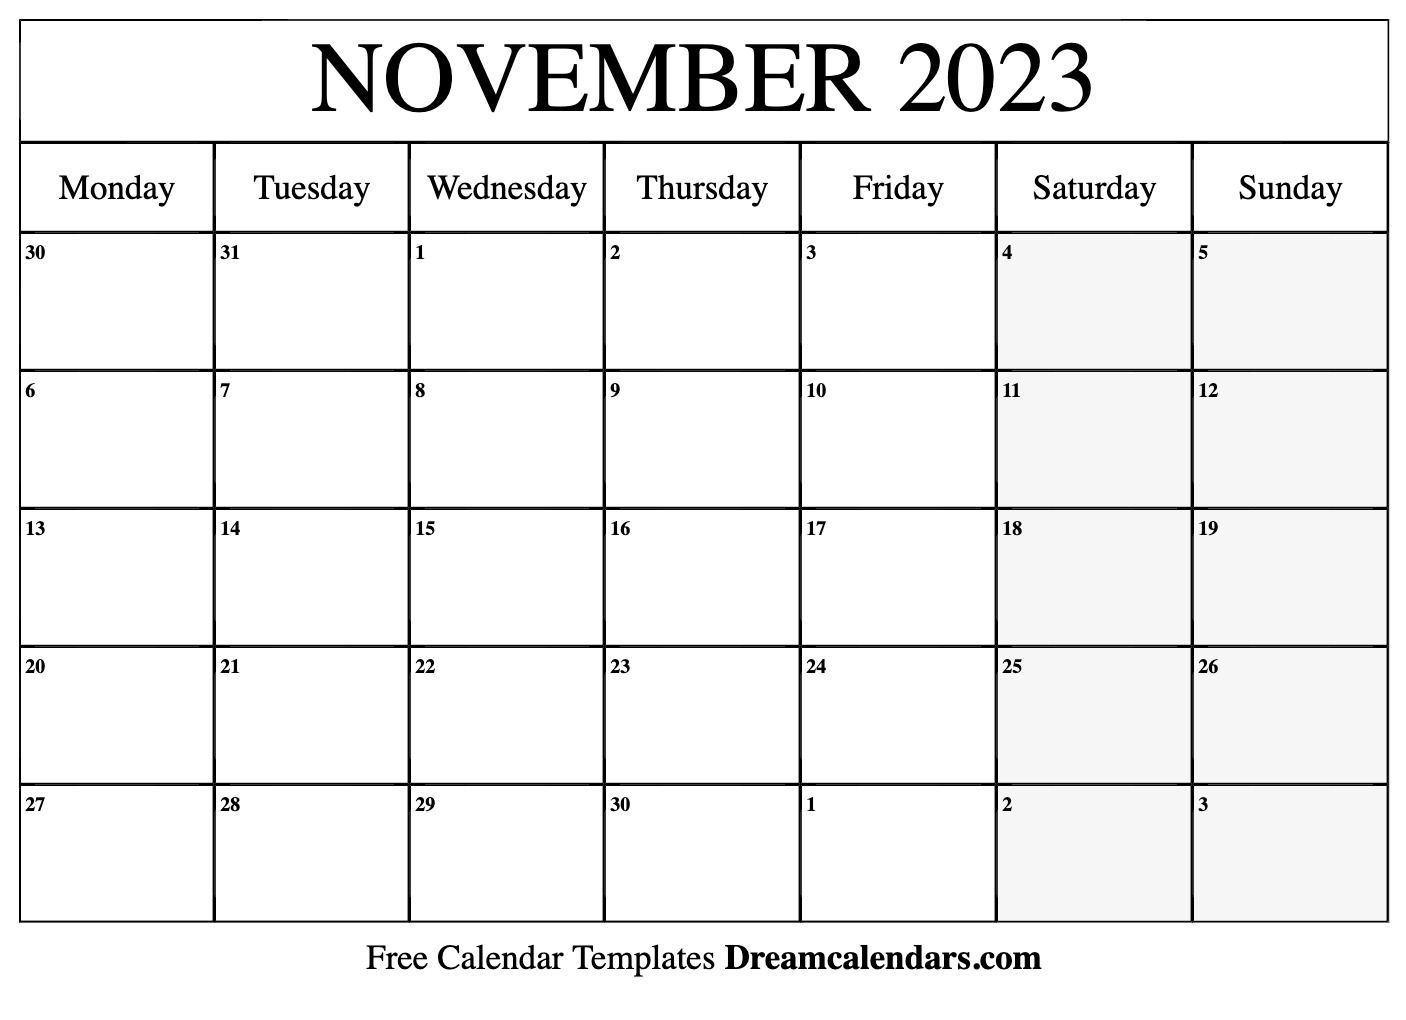 quarterly-calendar-2023-printable-printable-calendar-2023